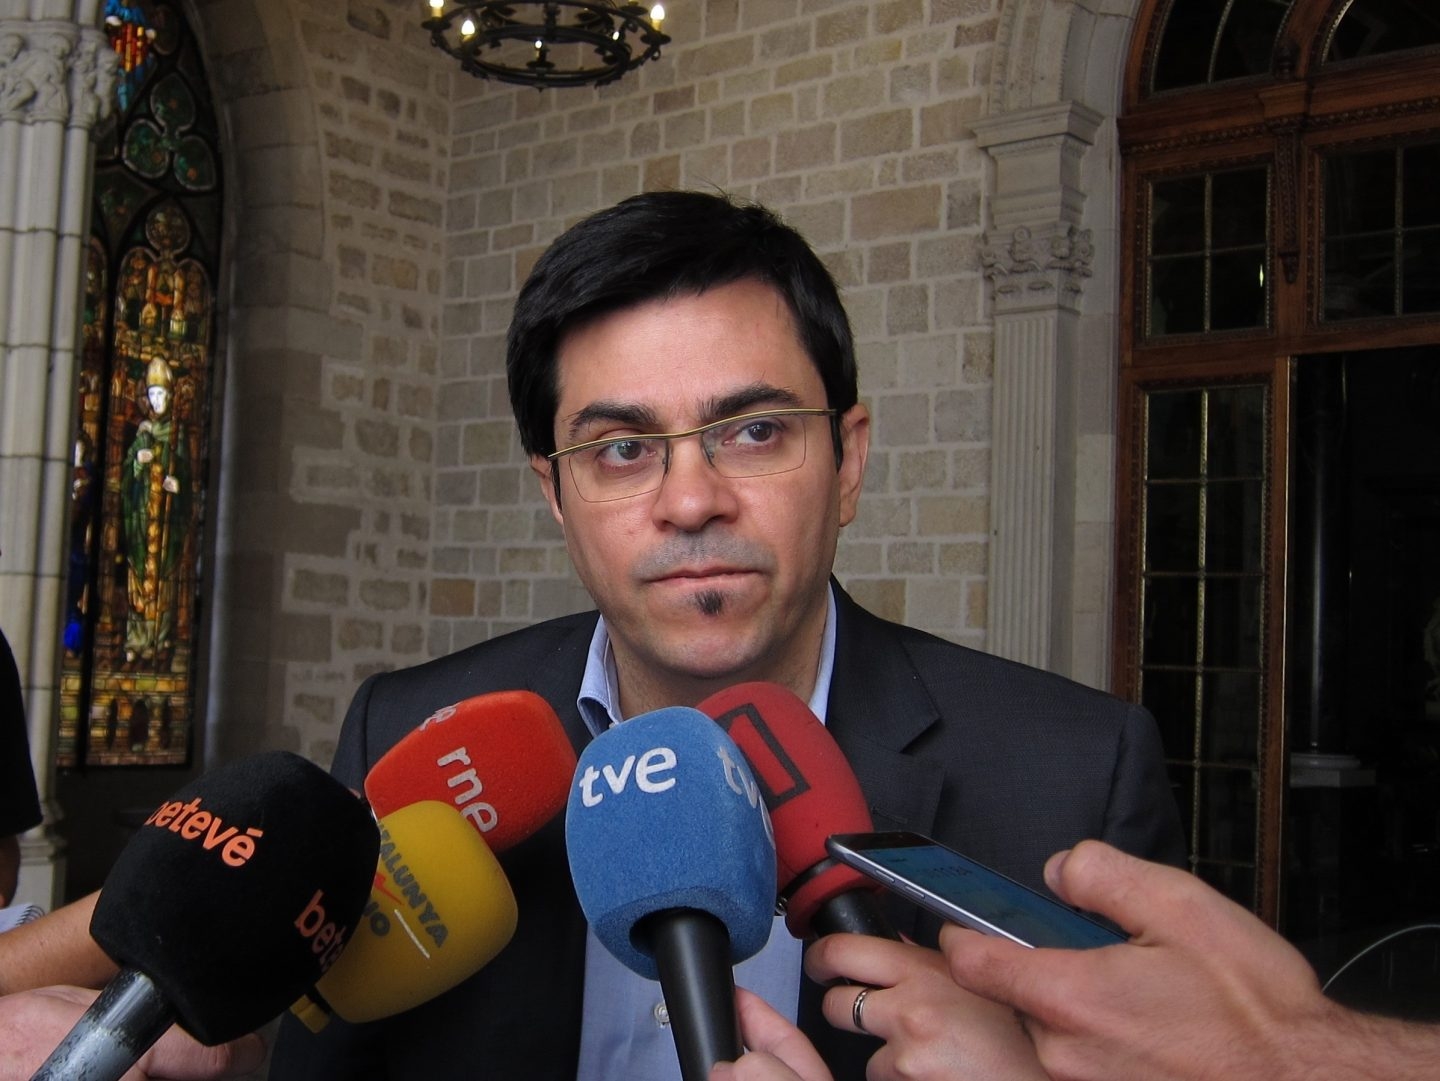 El teniente alcalde de Barcelona, Gerardo Pisarello, ha llamado a votar 'Sí' en el referéndum del 1 de octubre.